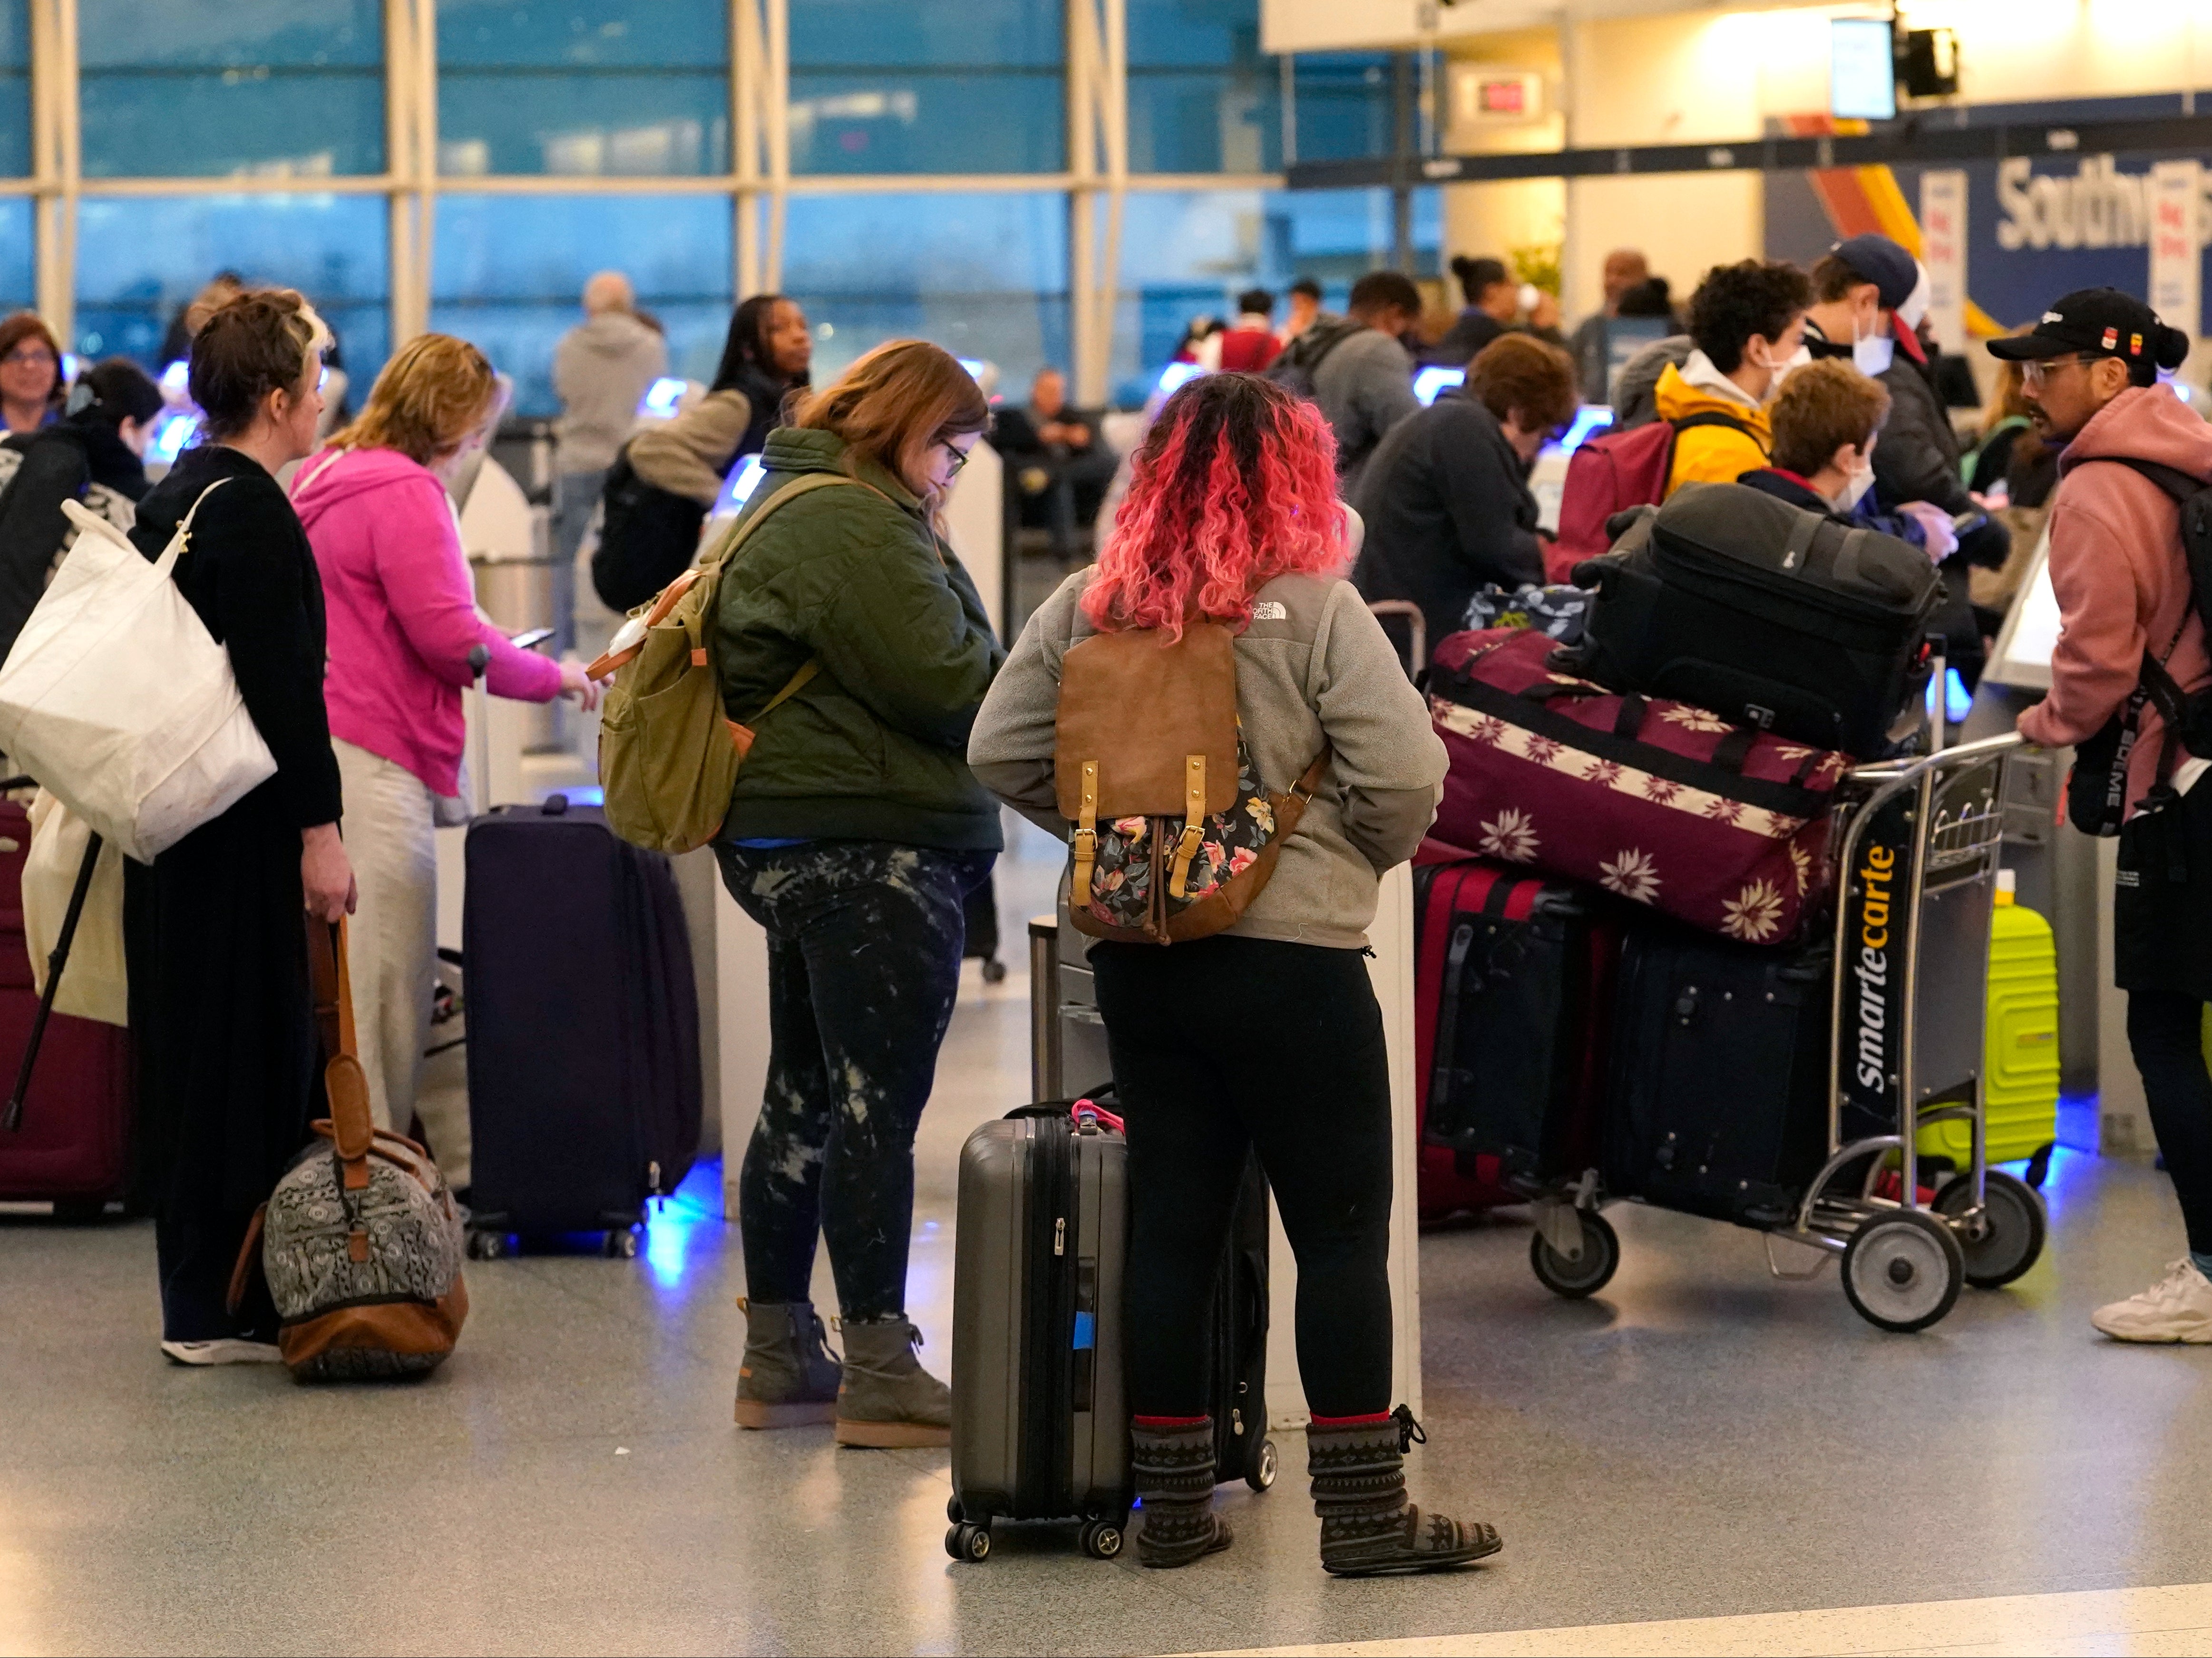 Los pasajeros hacen el check-in en los quioscos de autoservicio de Southwest Airlines en el aeropuerto Midway de Chicago mientras se producen retrasos en los vuelos debido a un fallo informático en la Administración Federal de Aviación